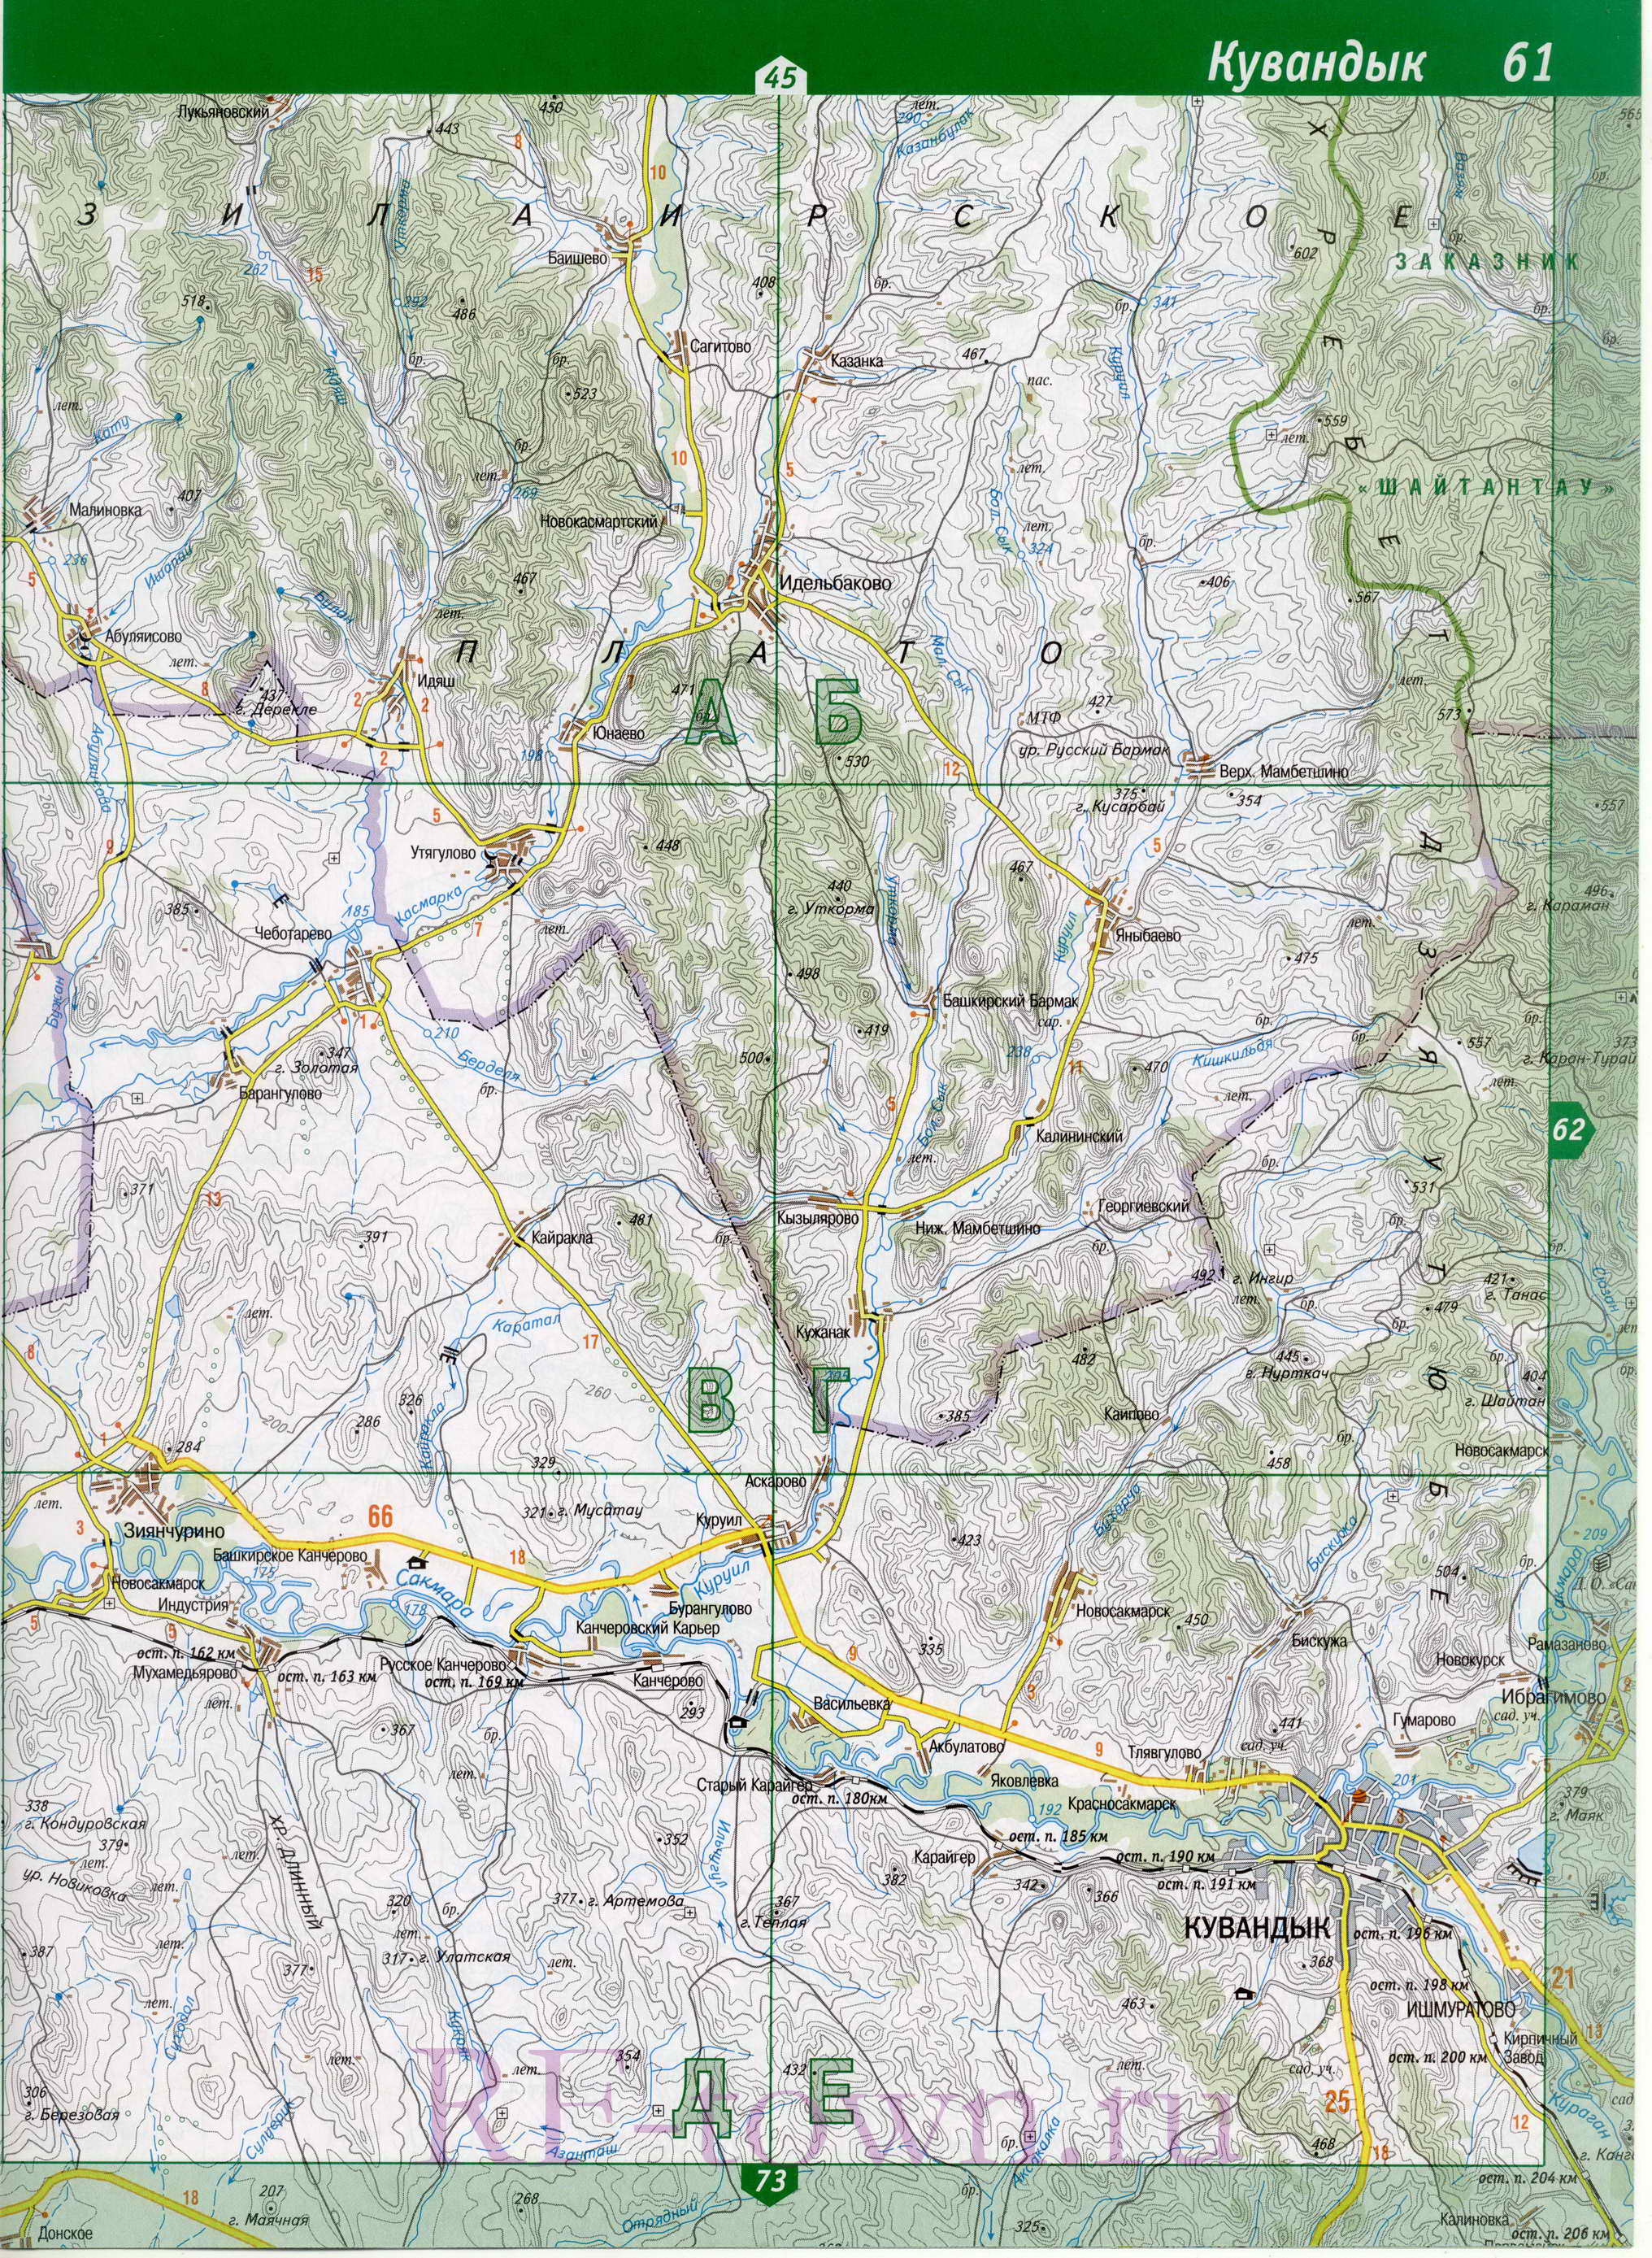 Кувандыкский район карта. Топографическая карта Кувандыкского р-на Оренбургской области масштаба 1см:2км, A0 - 